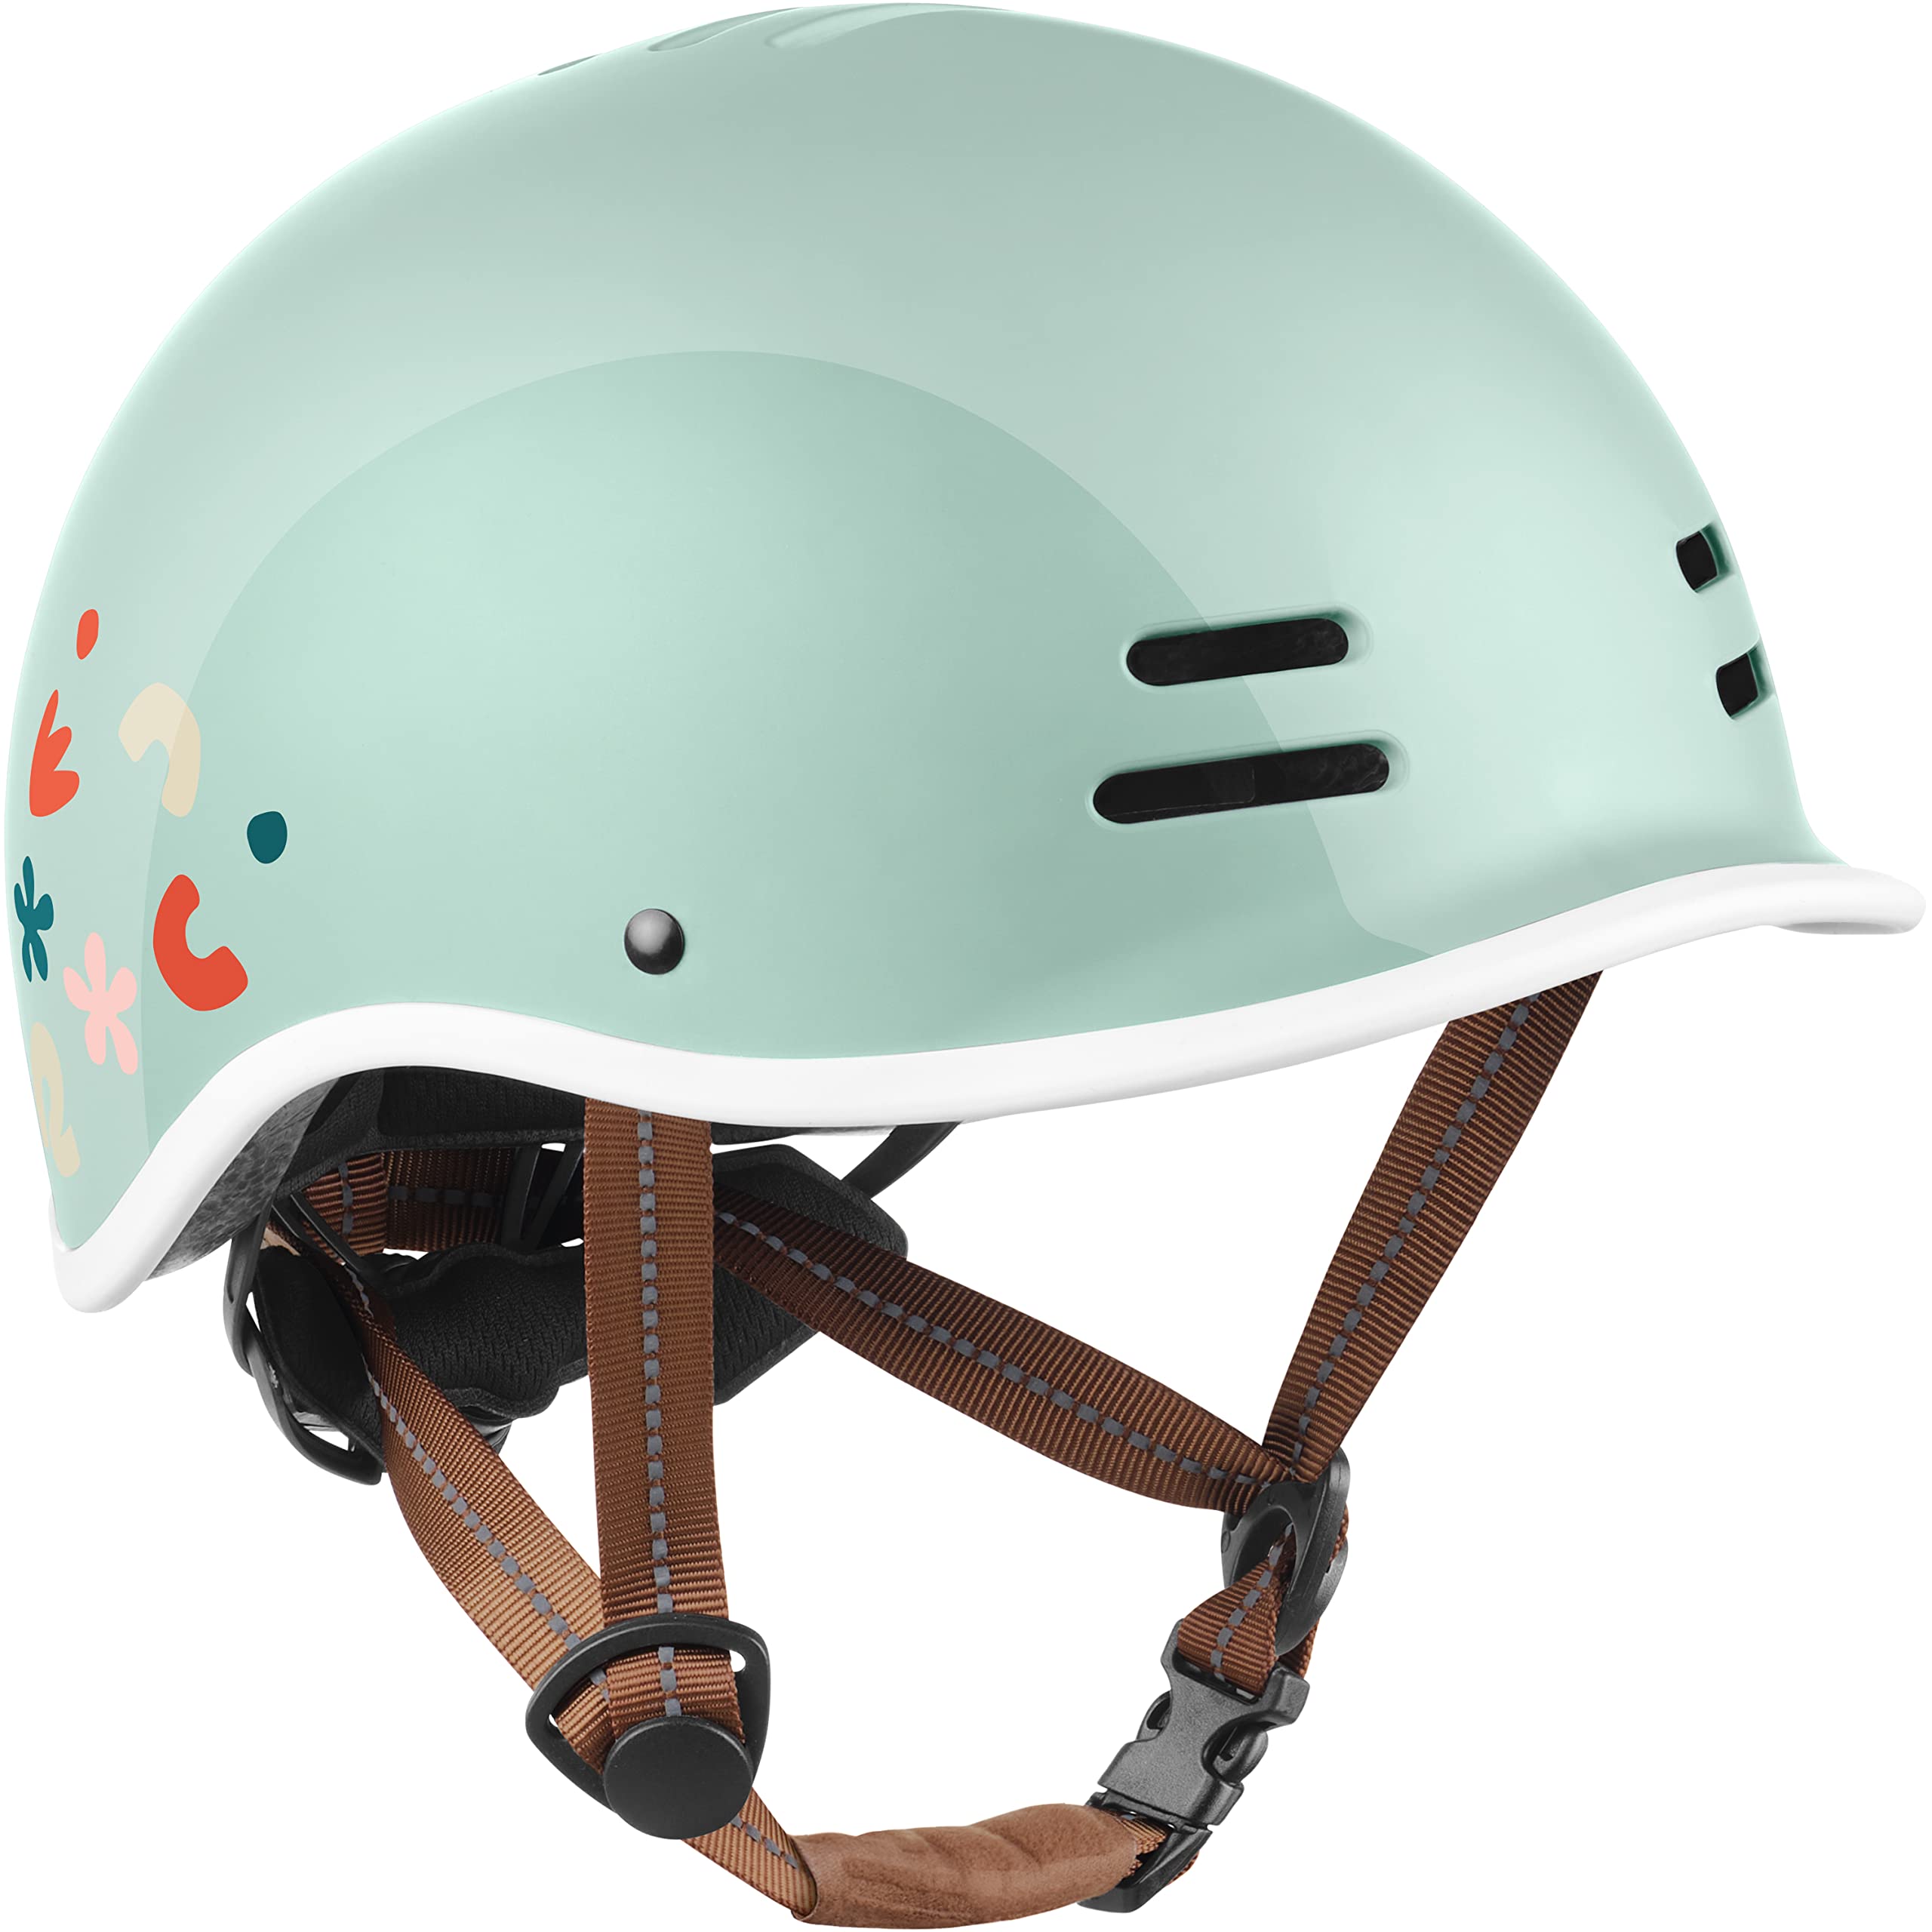 Retrospec Remi Kids' Bike Helmet